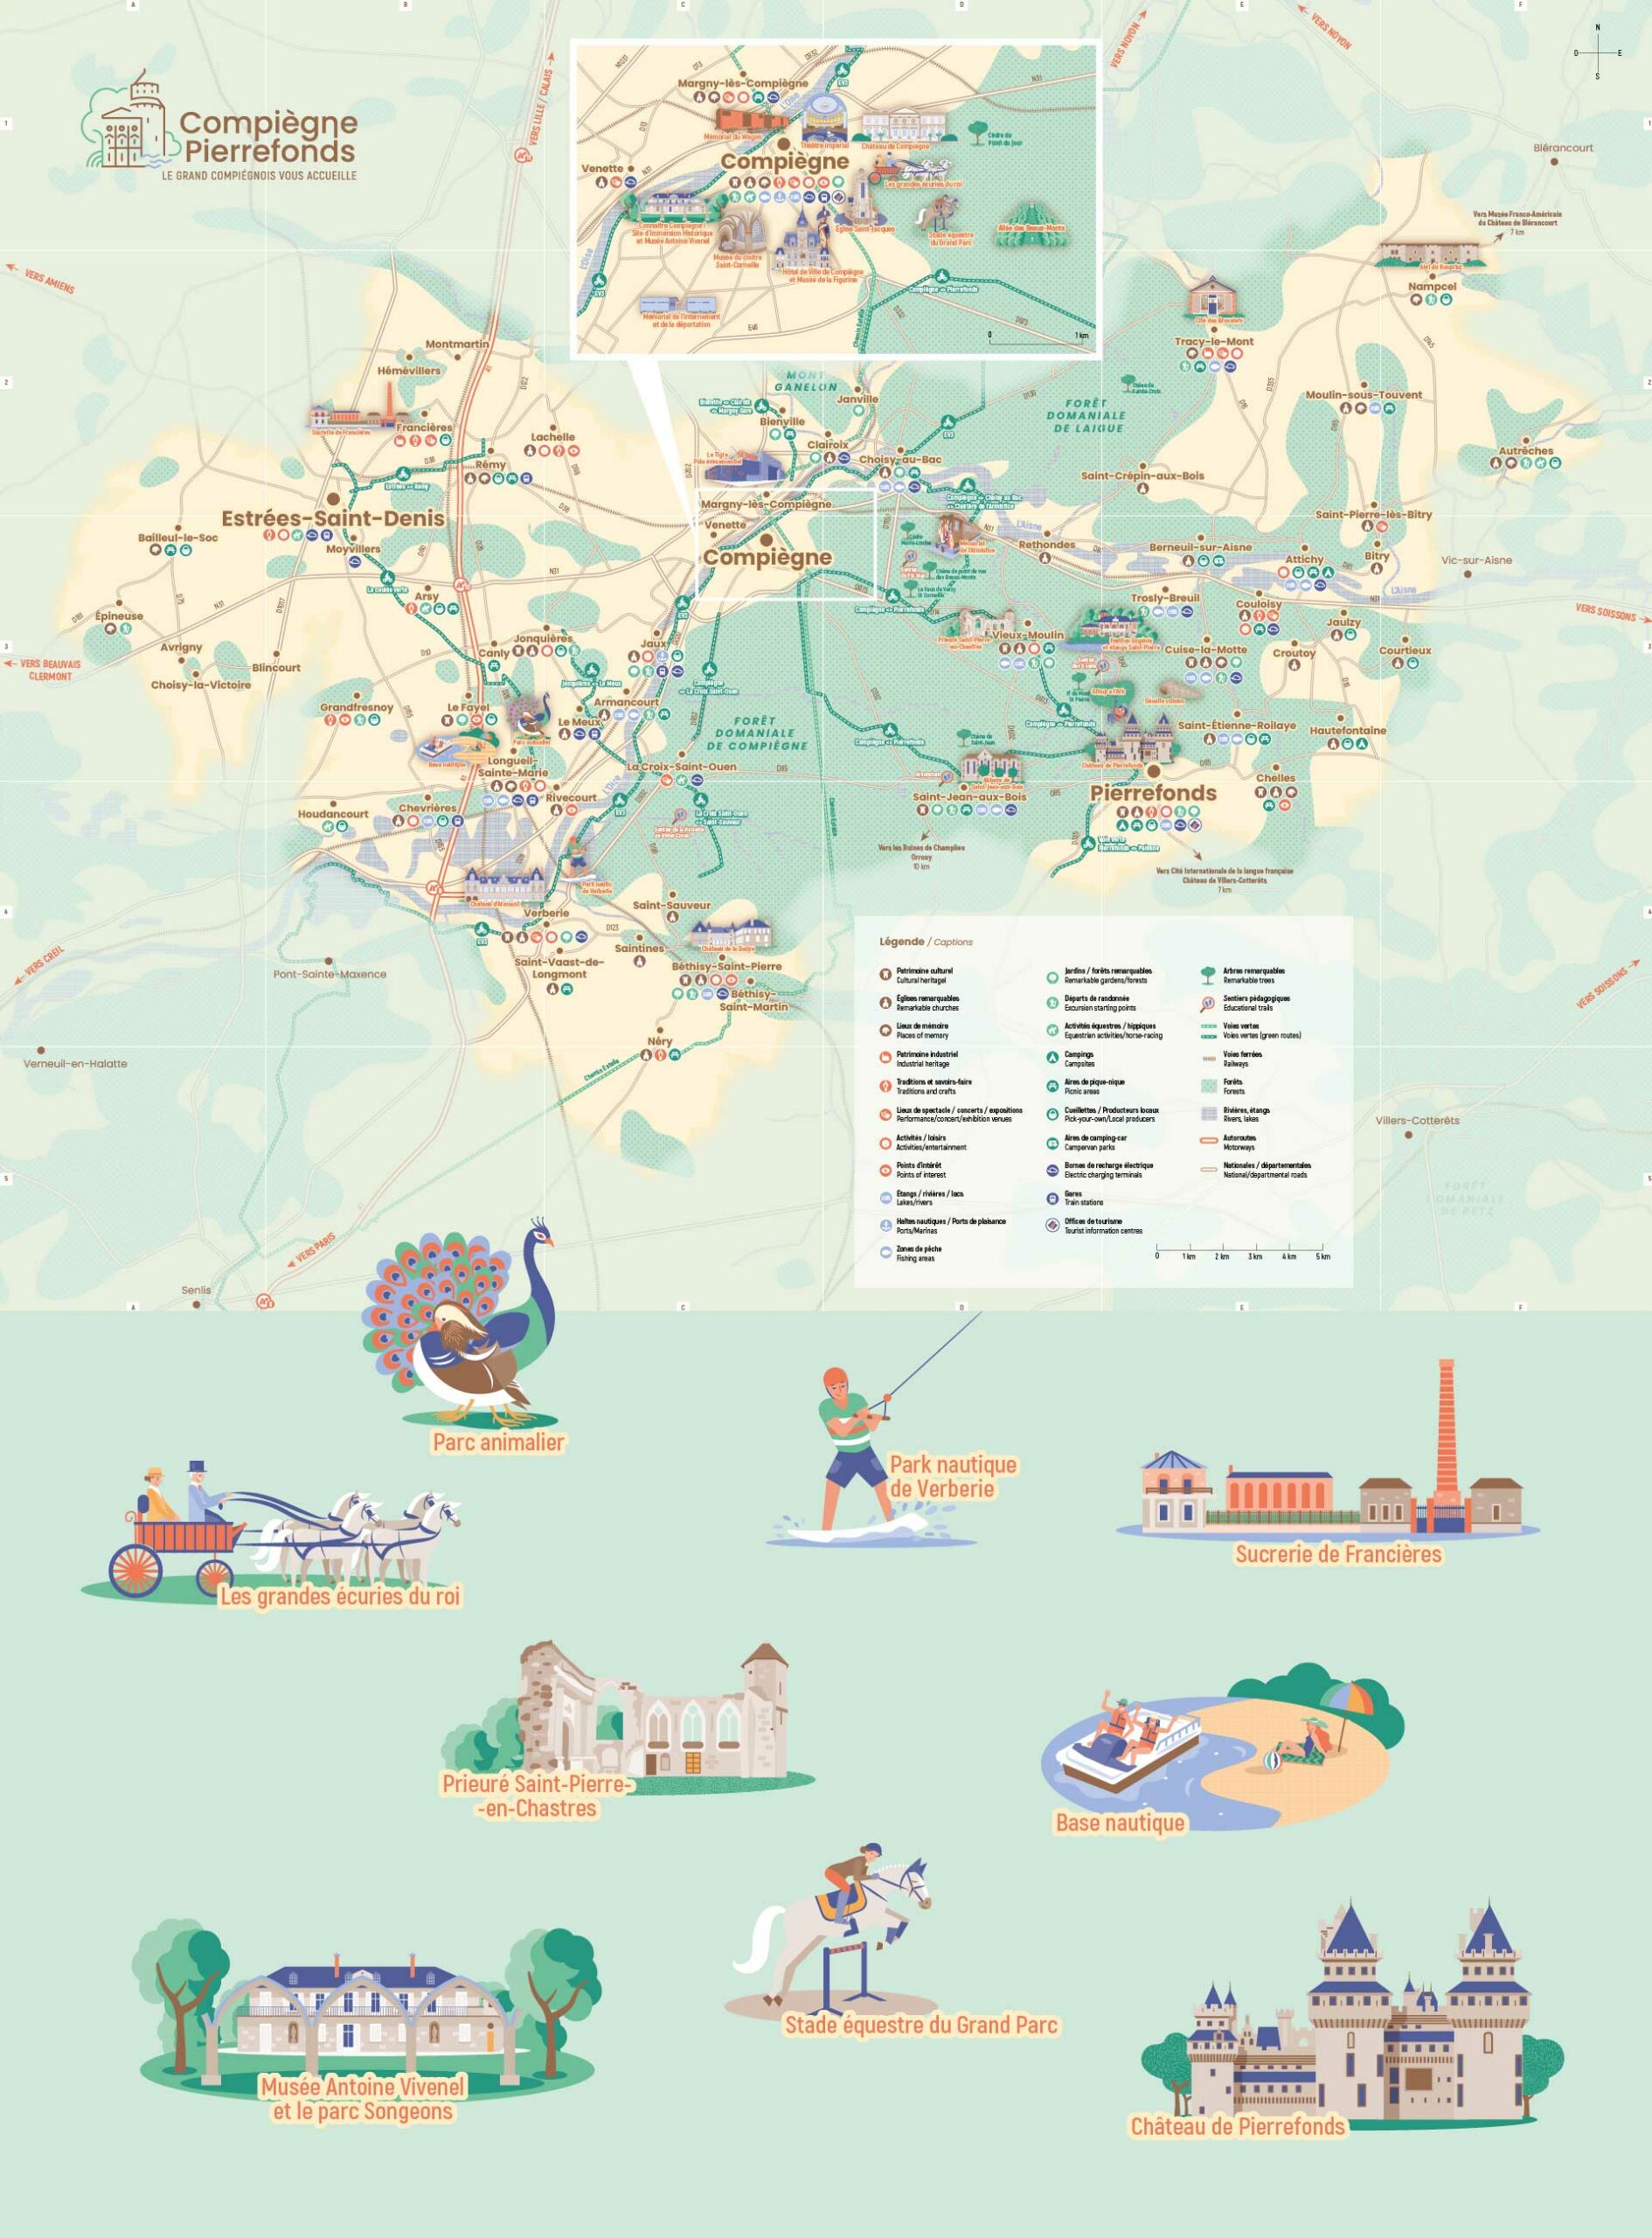 carte touristique illustrée de la destination Compiègne-Pierrefonds - Par le studio de design graphique okowoko à Amiens dans les Hauts de France